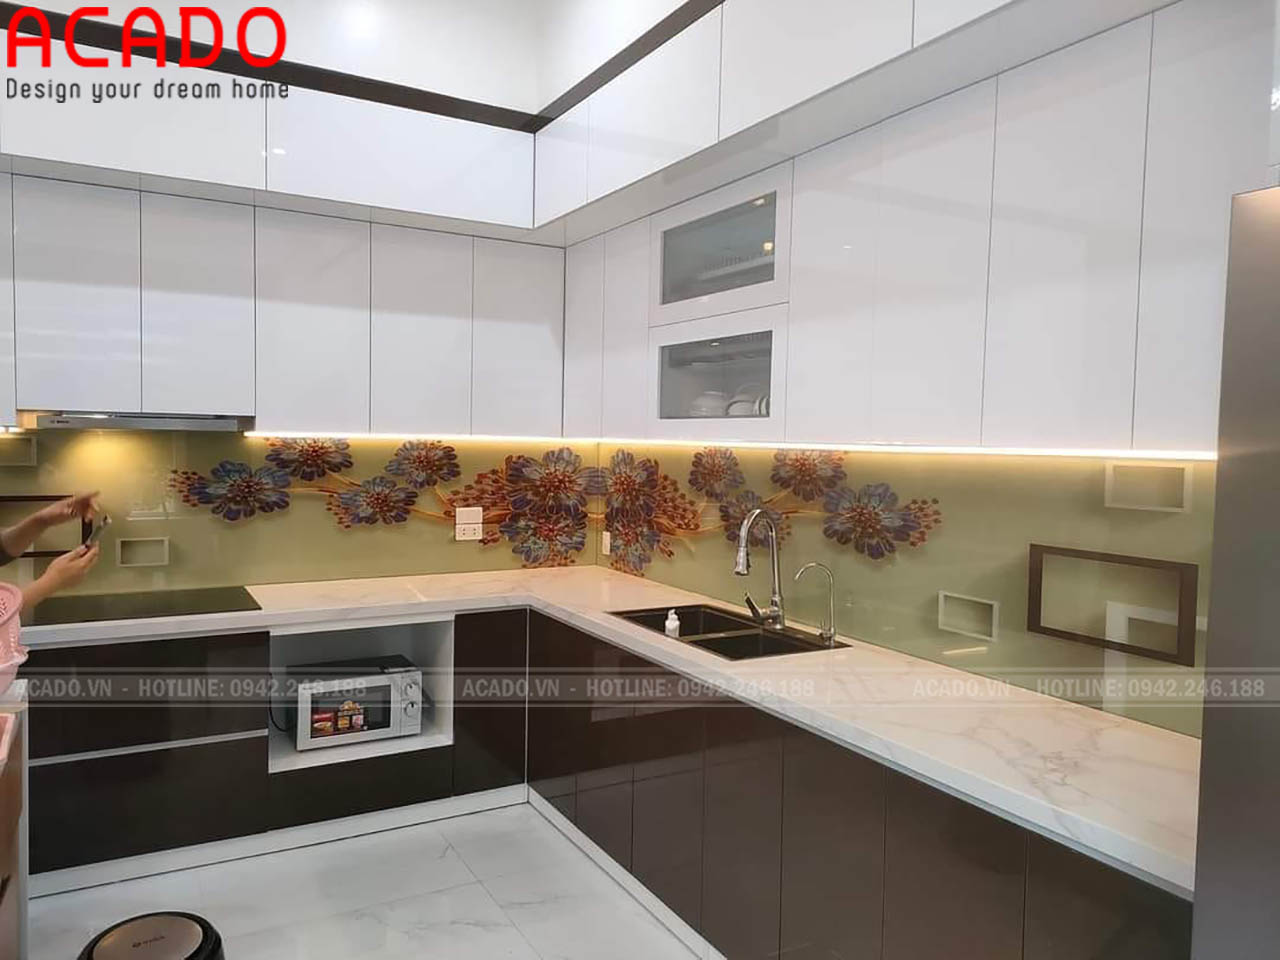 Thiết kế tủ bếp chất liệu Acrylic kết jopwj kính 3D - Tủ bếp tại Bắc Ninh